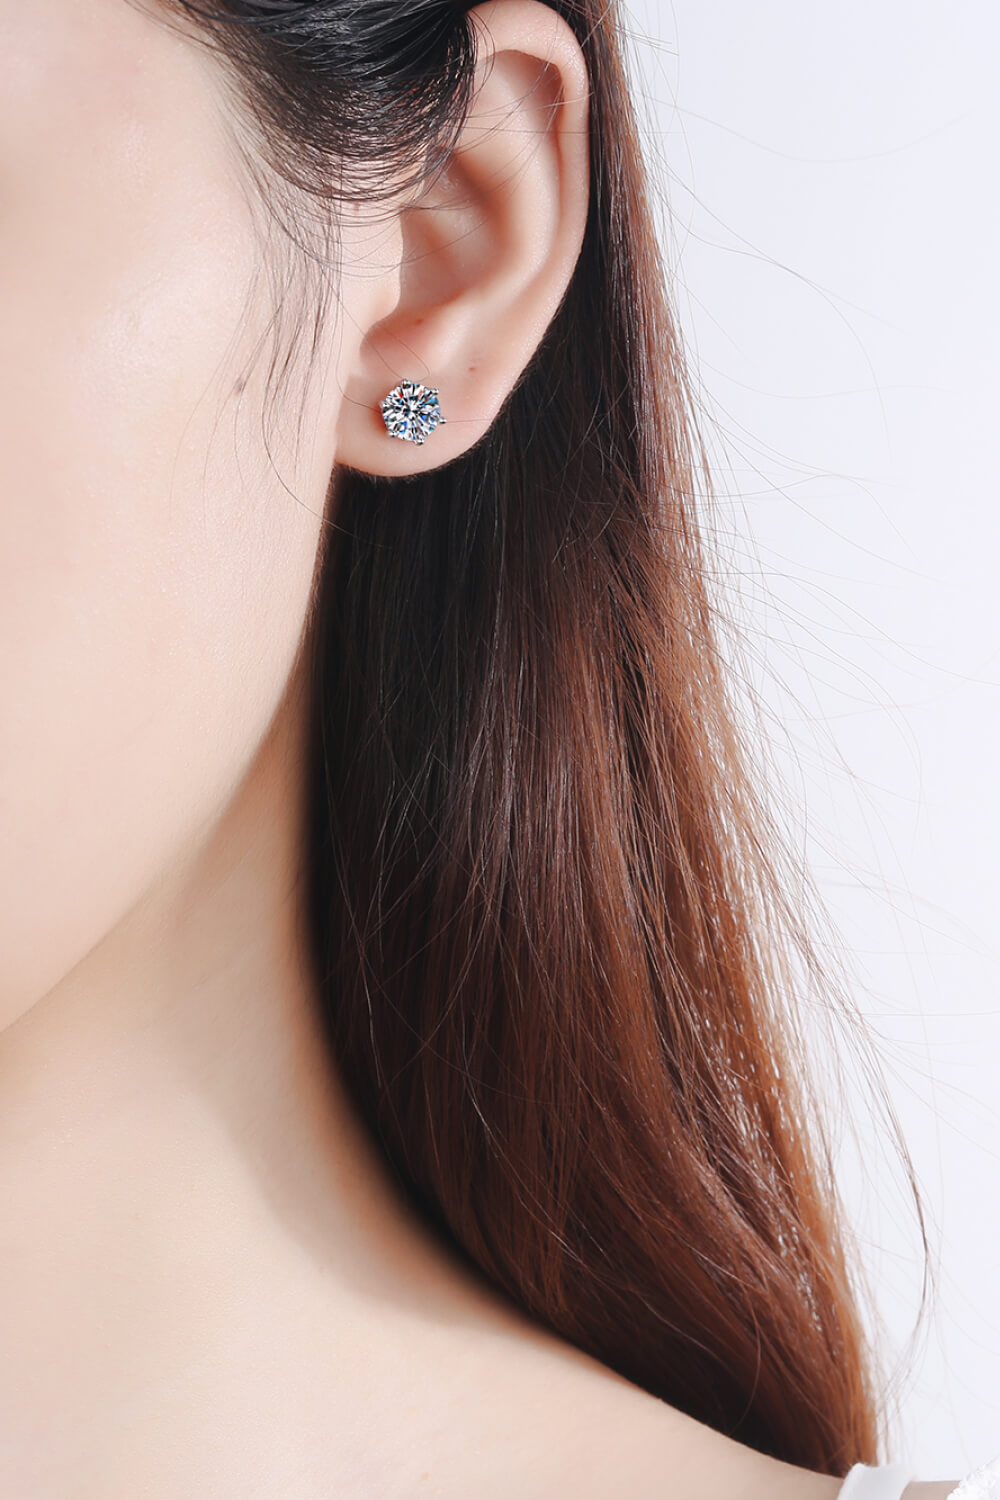 Adored Moissanite Stud Earrings - Tophatter Shopping Deals